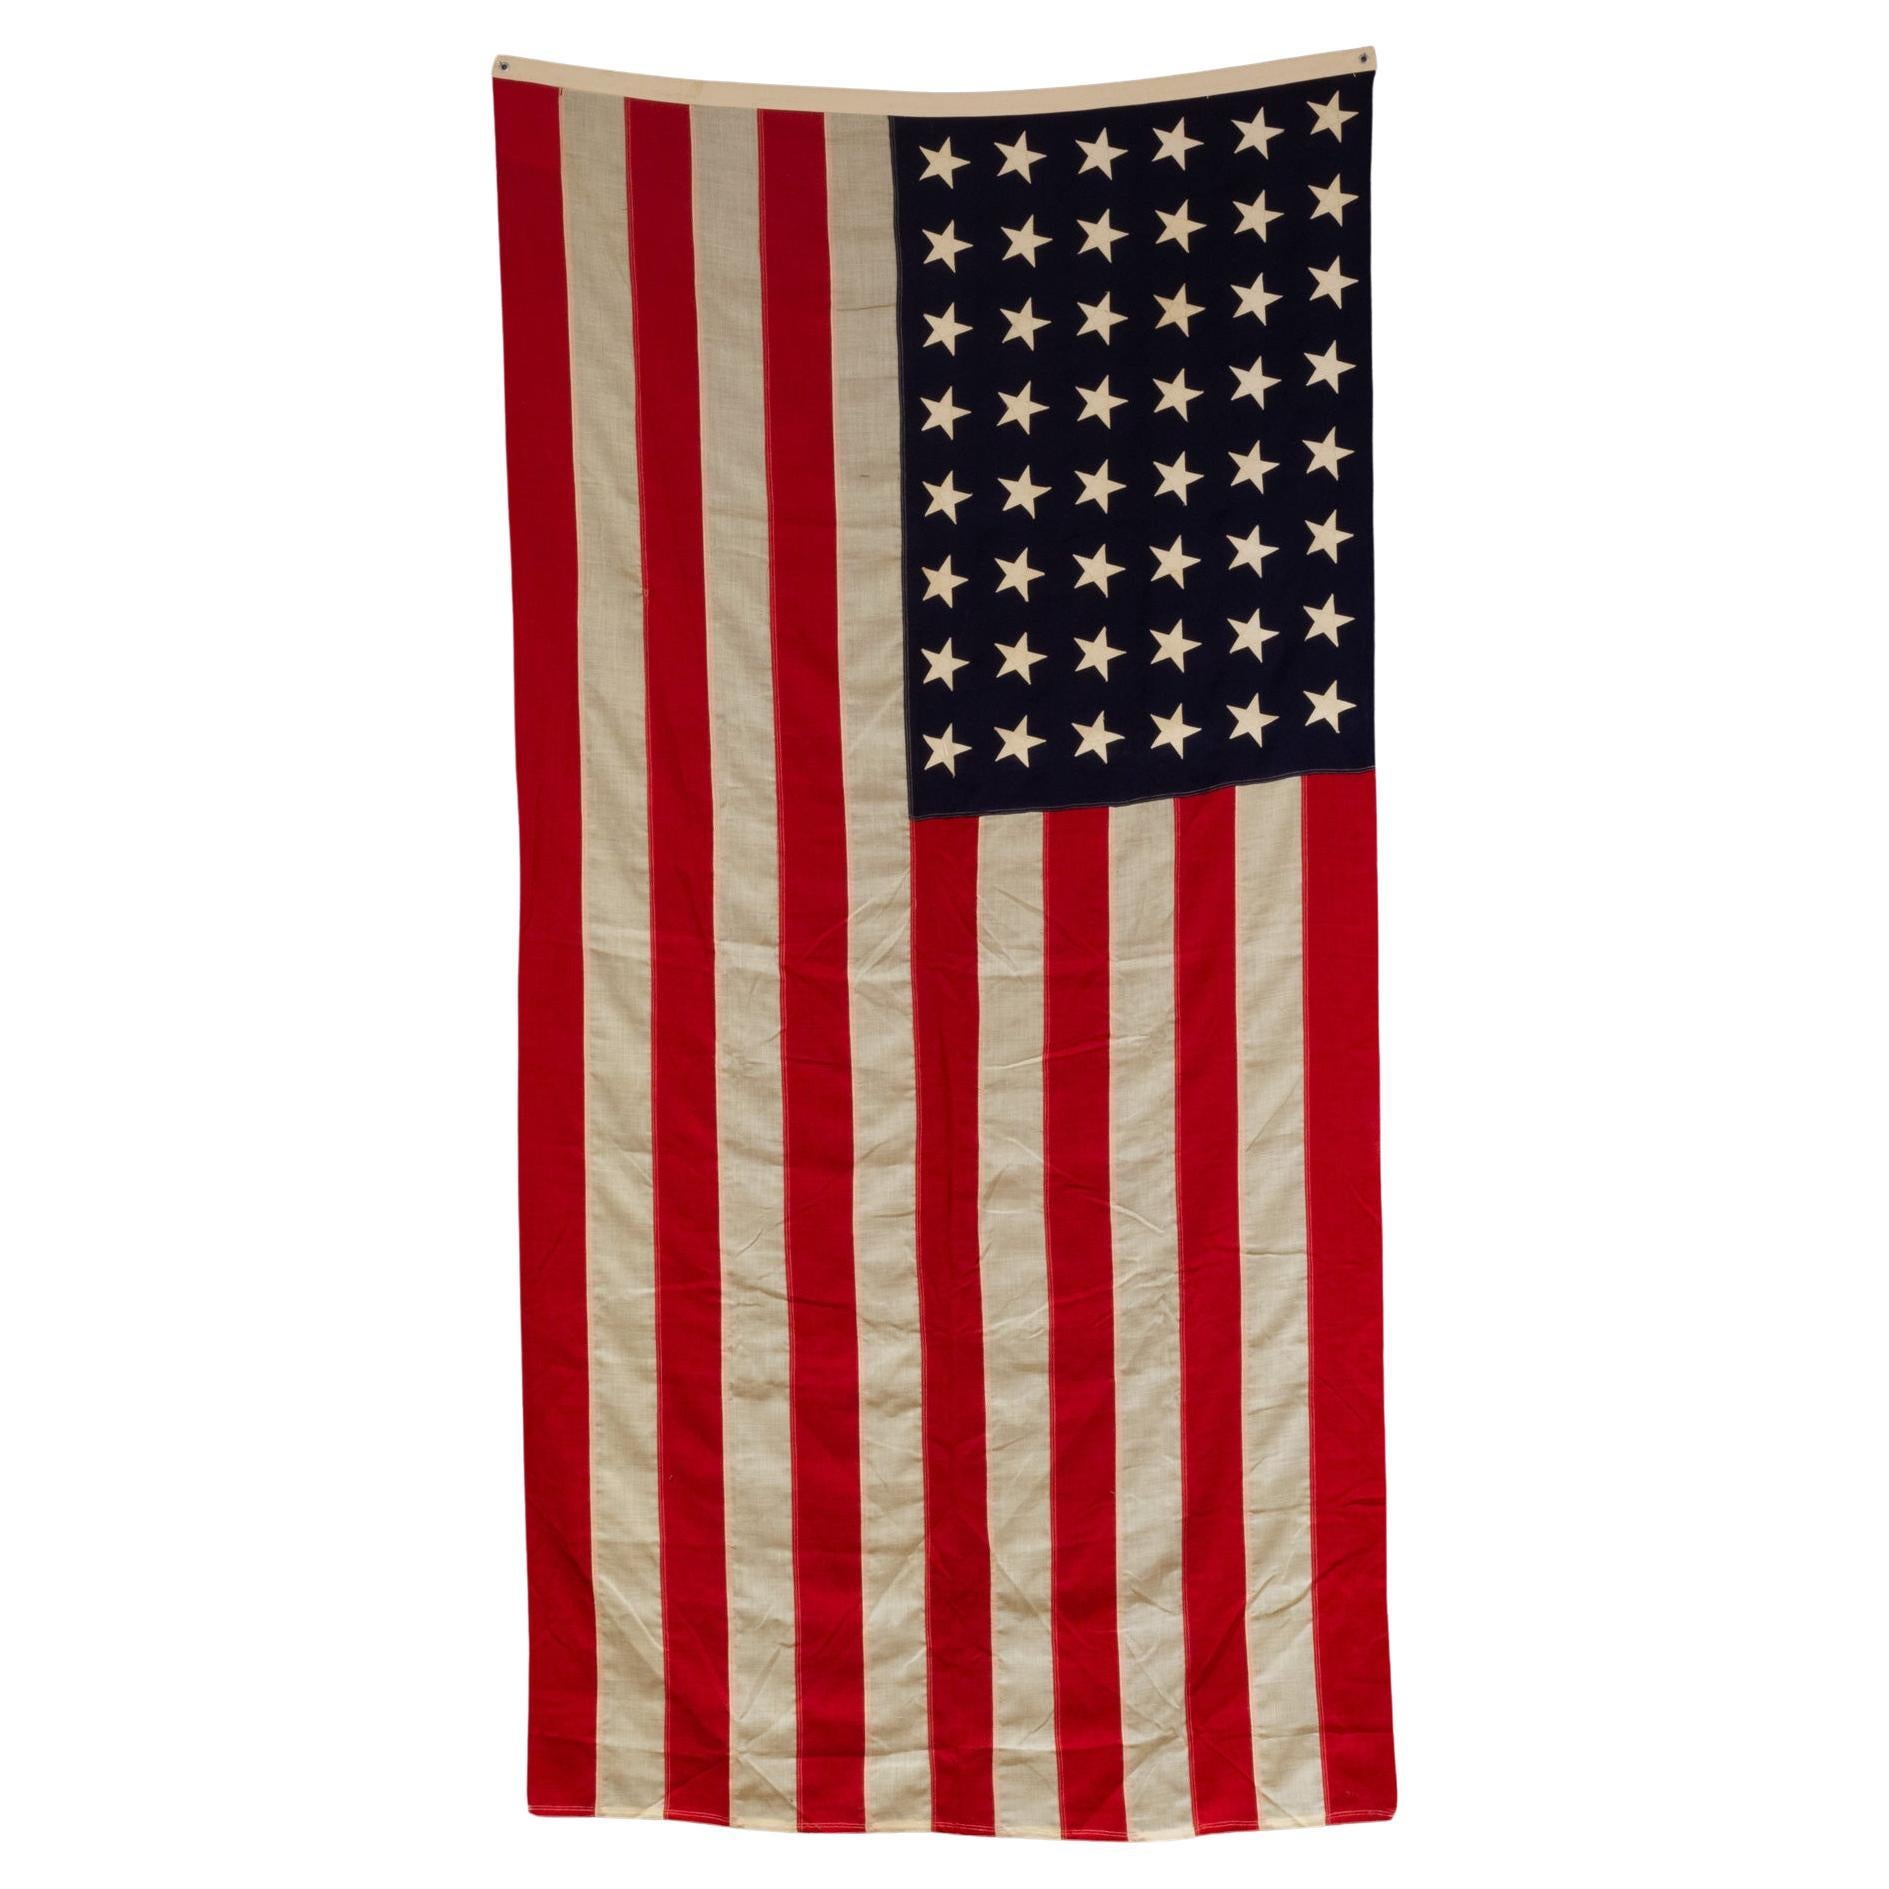 Große amerikanische Vintage-Vintage-Wollflagge mit 48 Sternen, ca. 1940-1950, kostenloser Versand